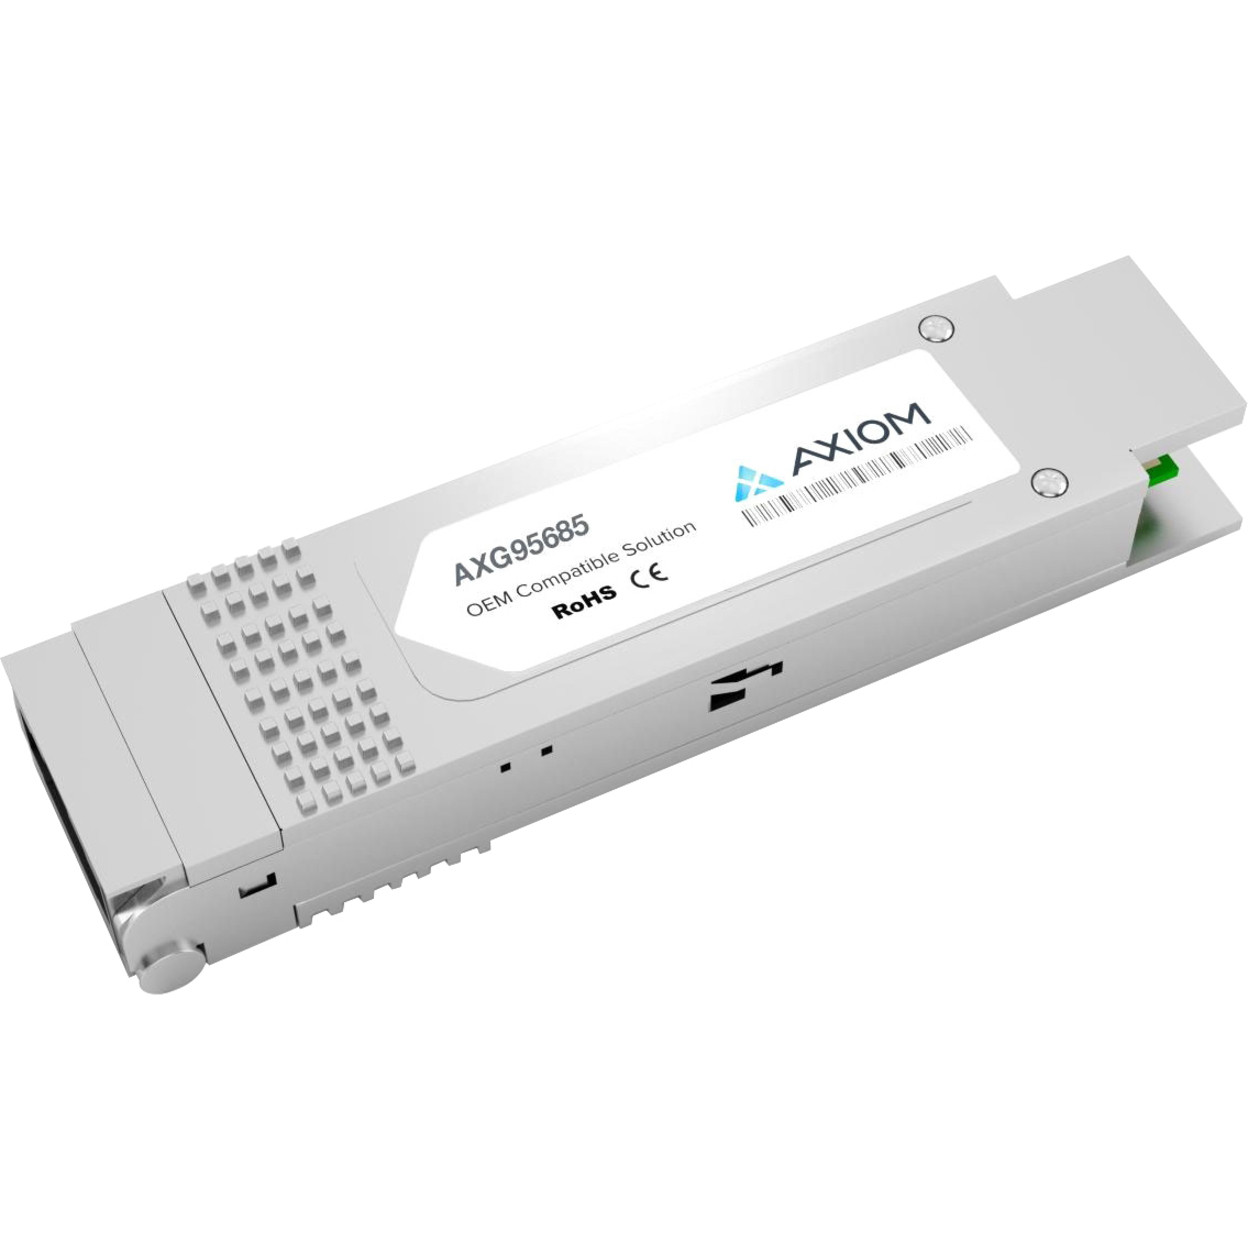 Axiom Memory Solutions 40GBASE-ER4 QSFP+ Transceiver for CiscoQSFP-40G-ER4TAA Compliant100% Cisco Compatible 40GBASE-ER4 QSFP+ AXG95685